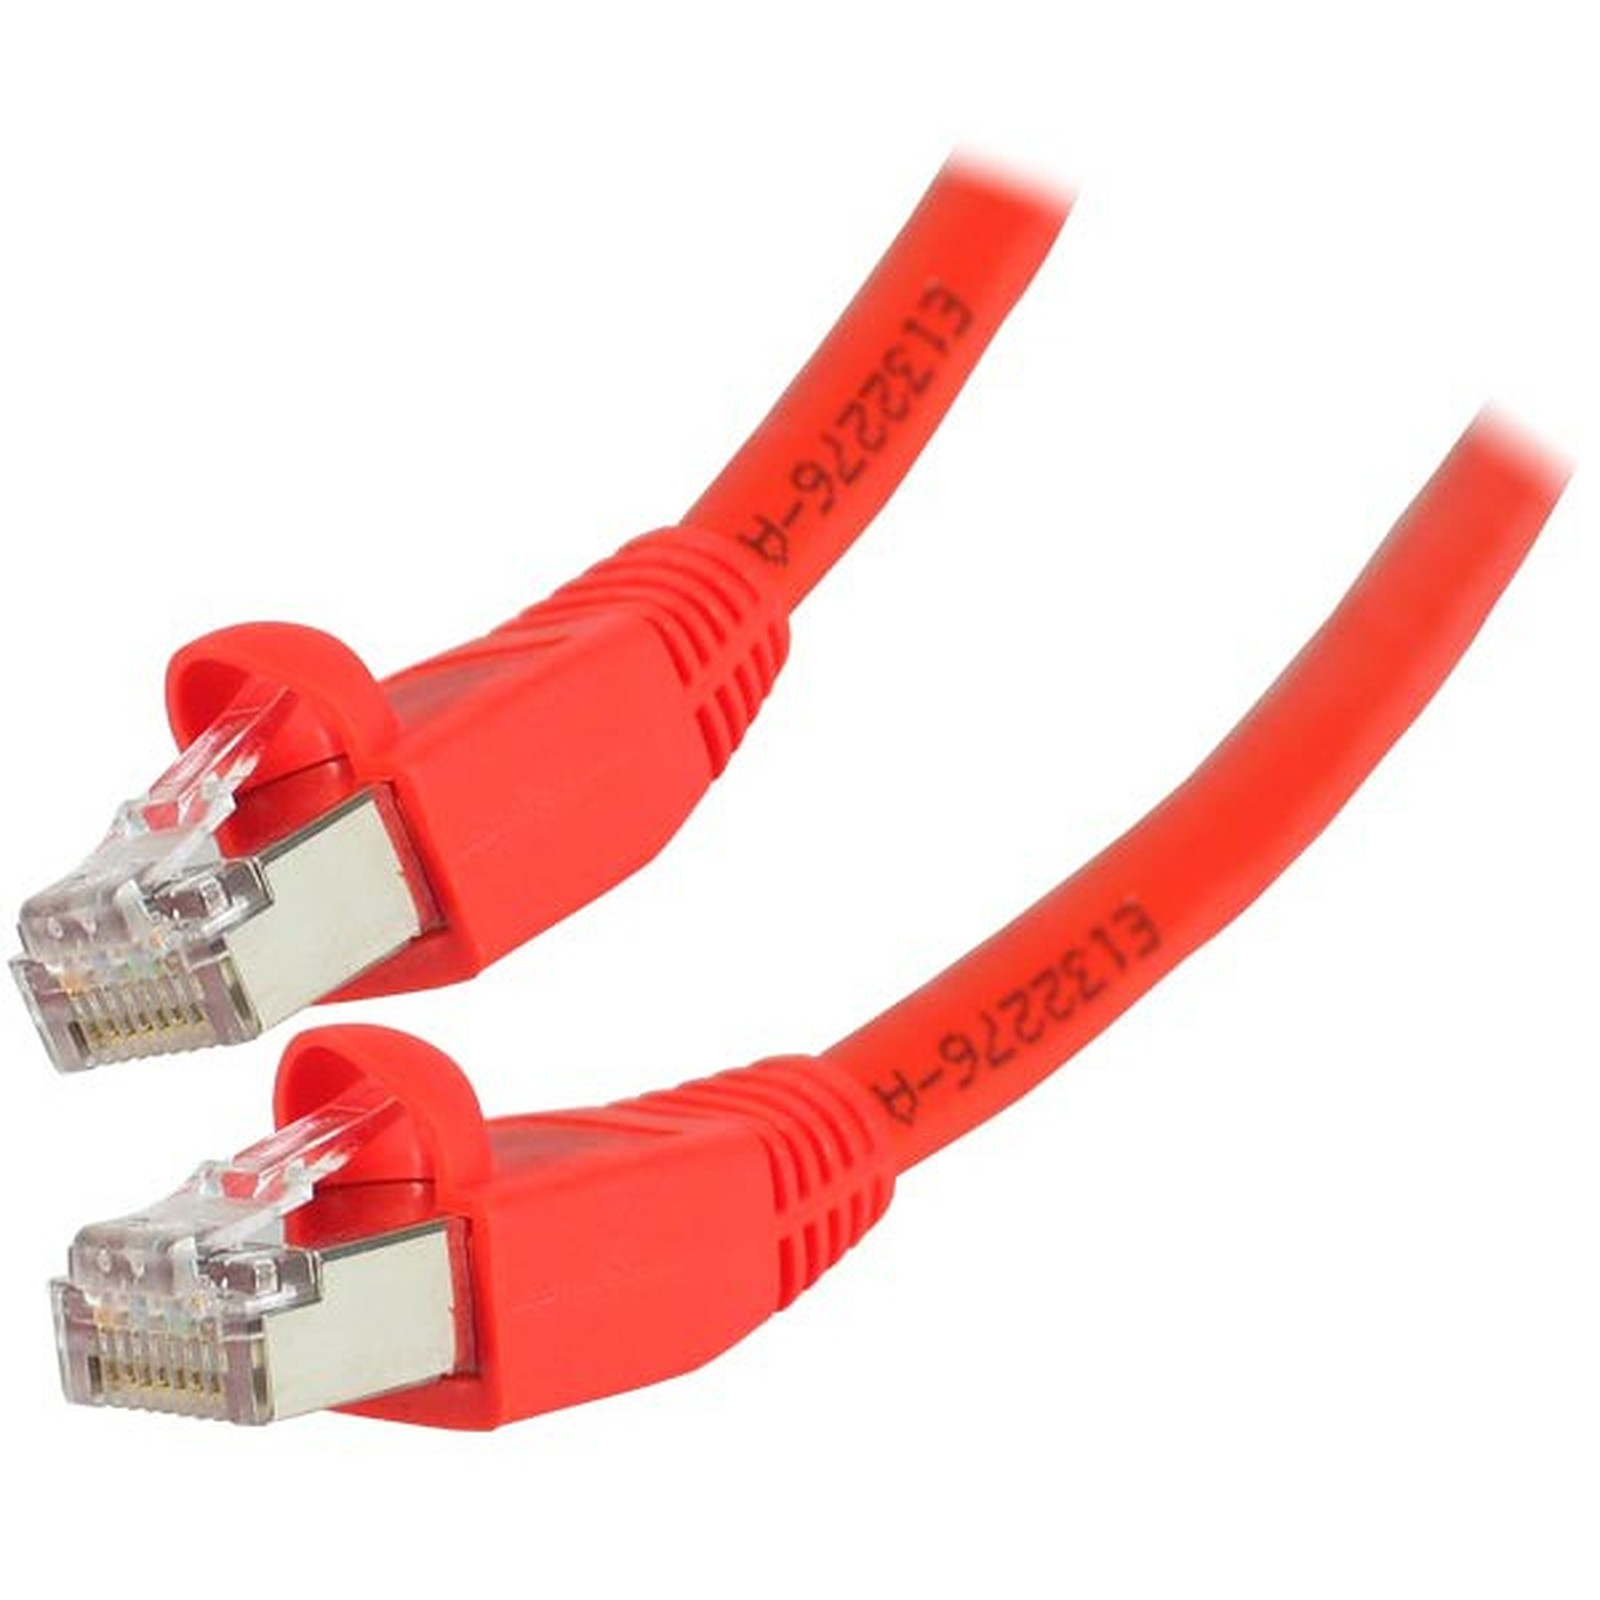 Cable RJ45 categorie 6 S/FTP 10 m (Rouge) - Cable RJ45 Generique